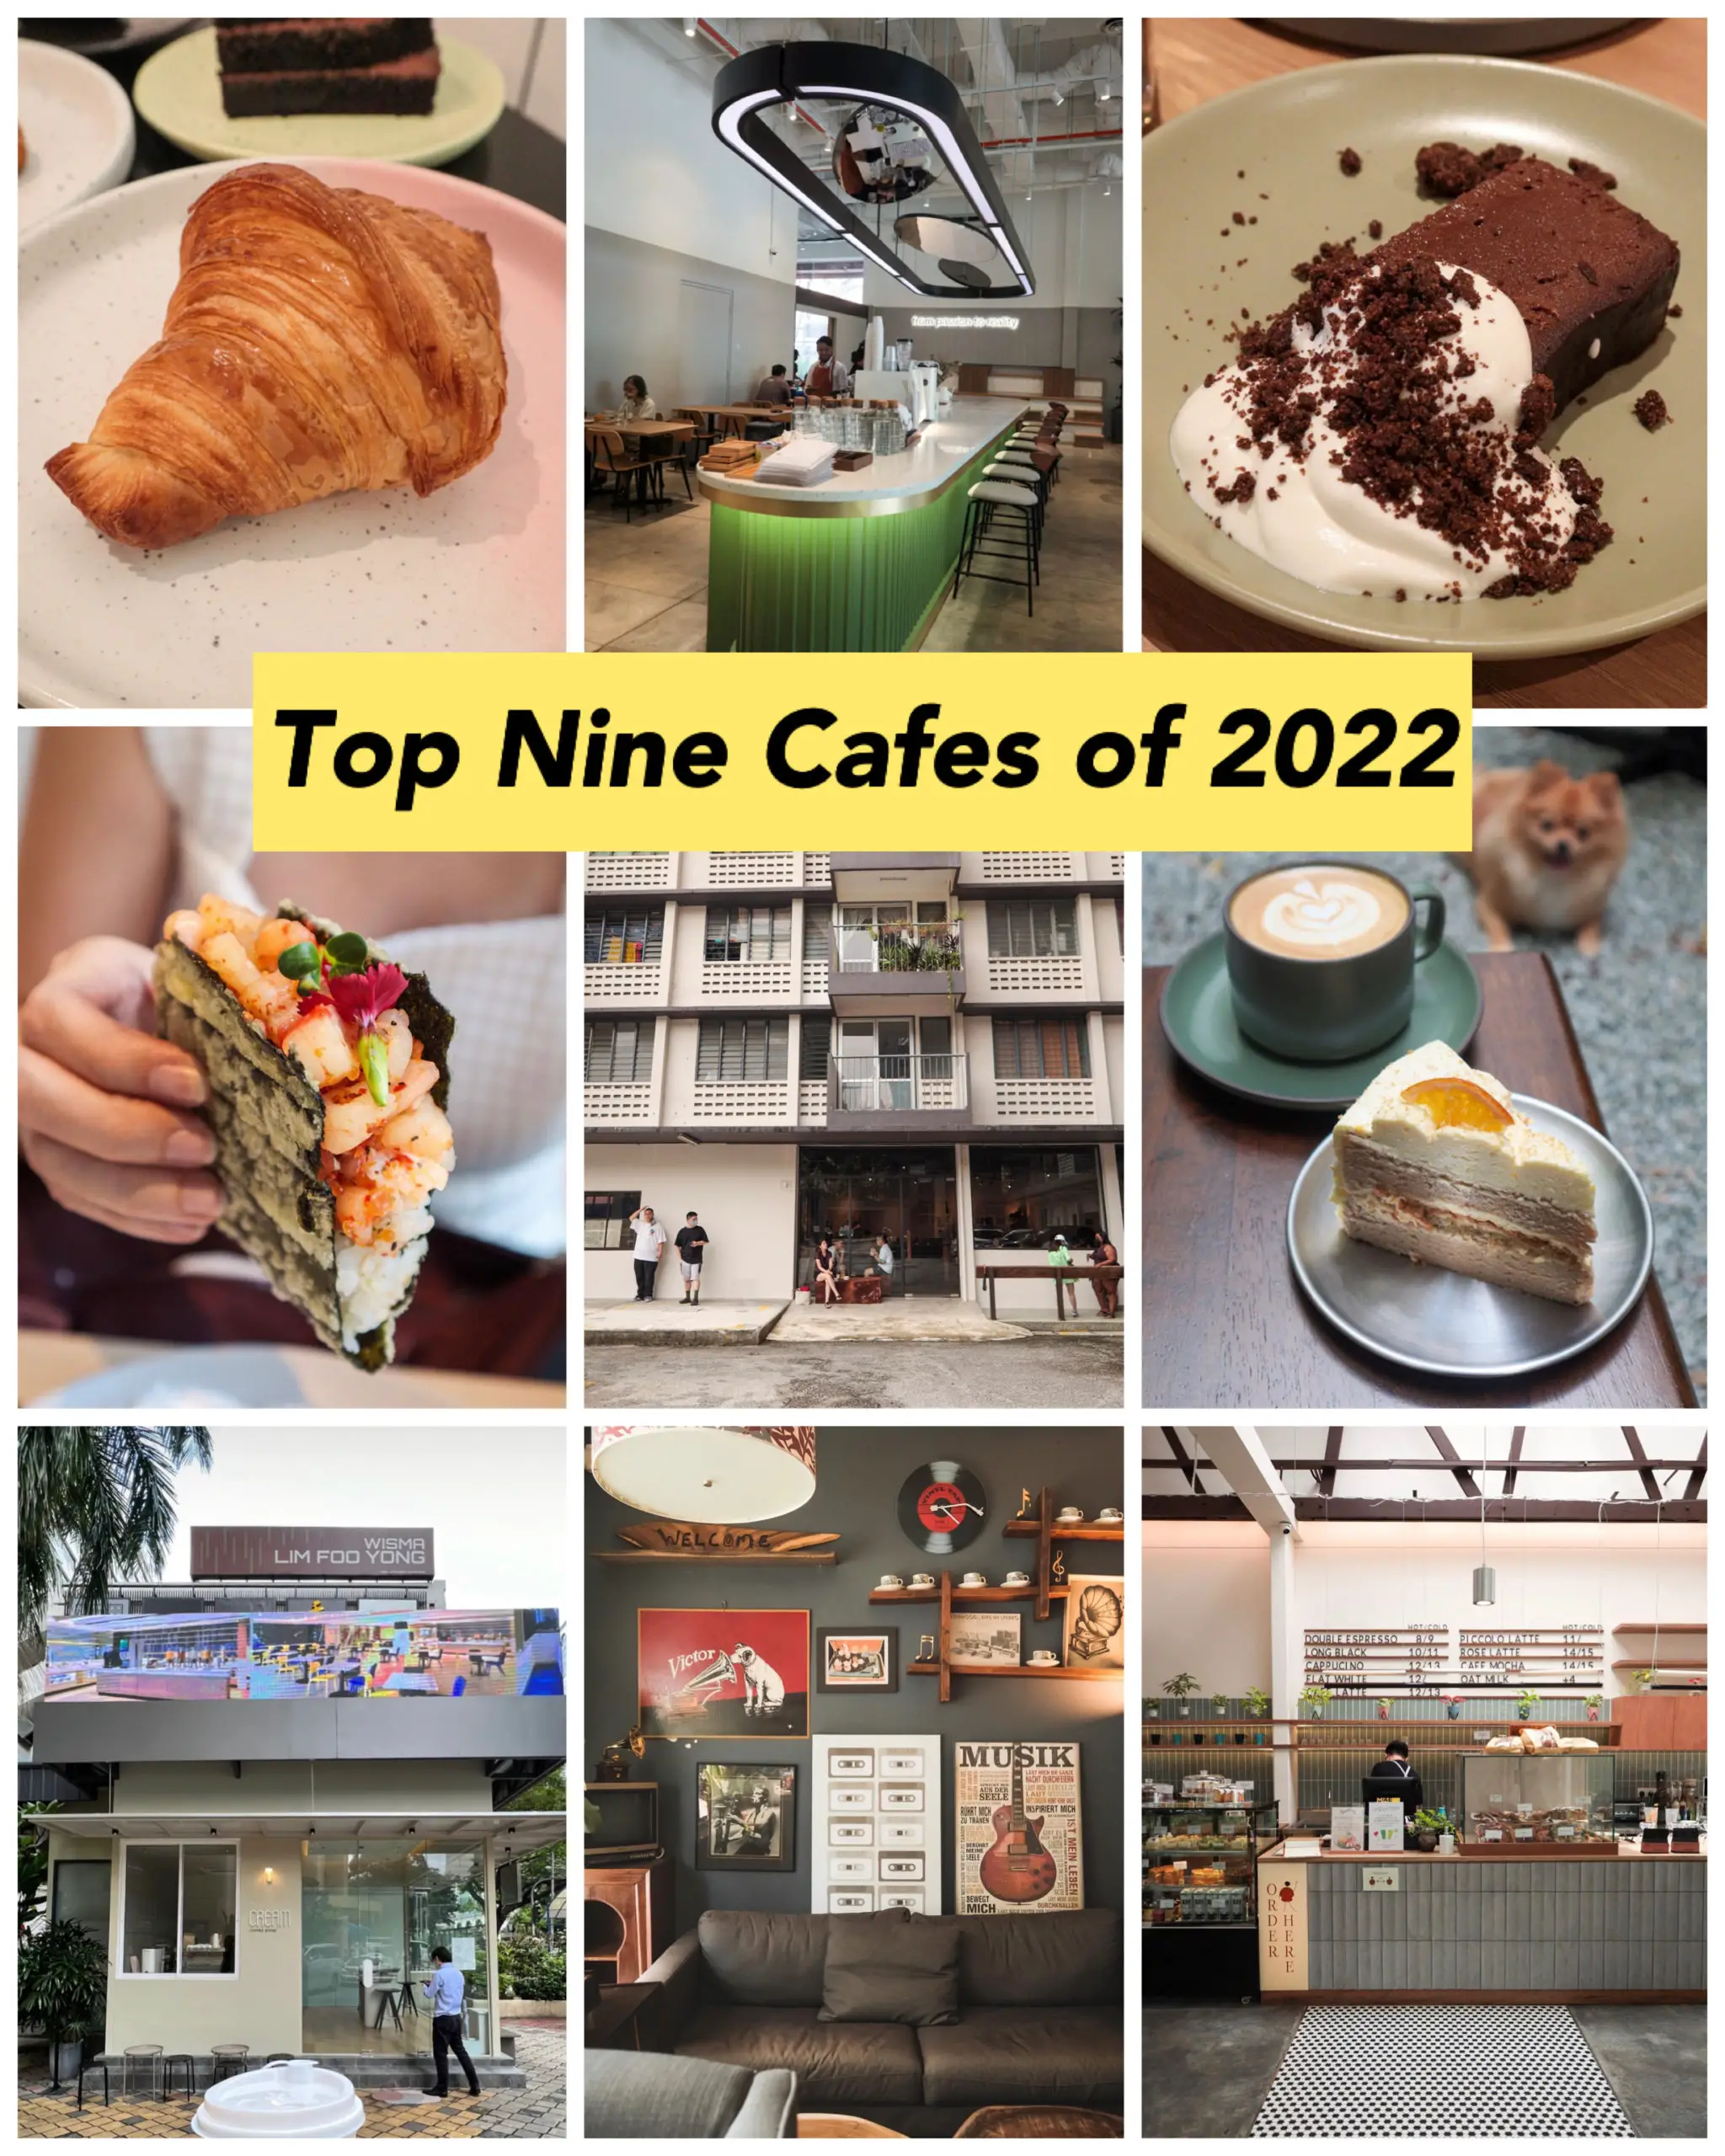 Top Nine Cafes of 2022